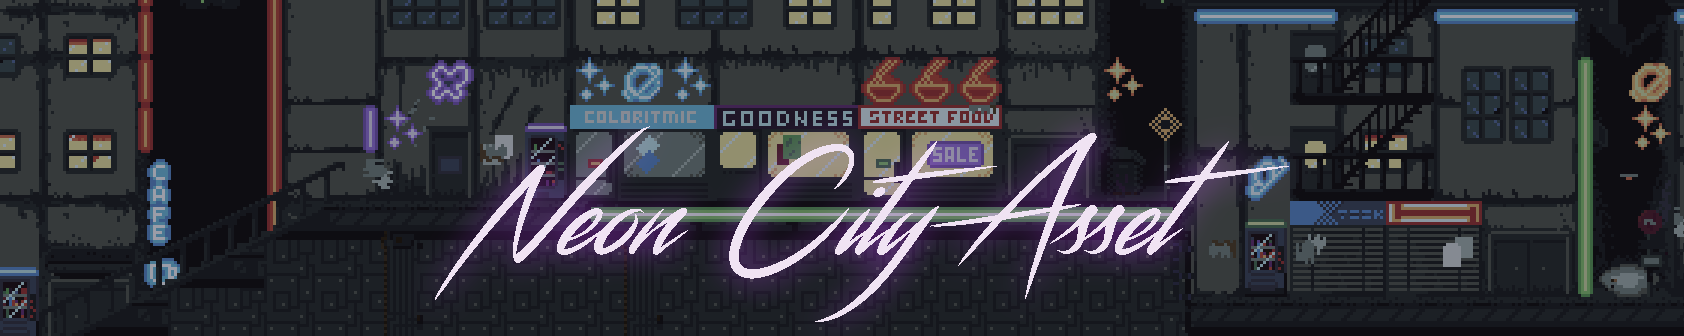 Neon City Pixel Art Asset